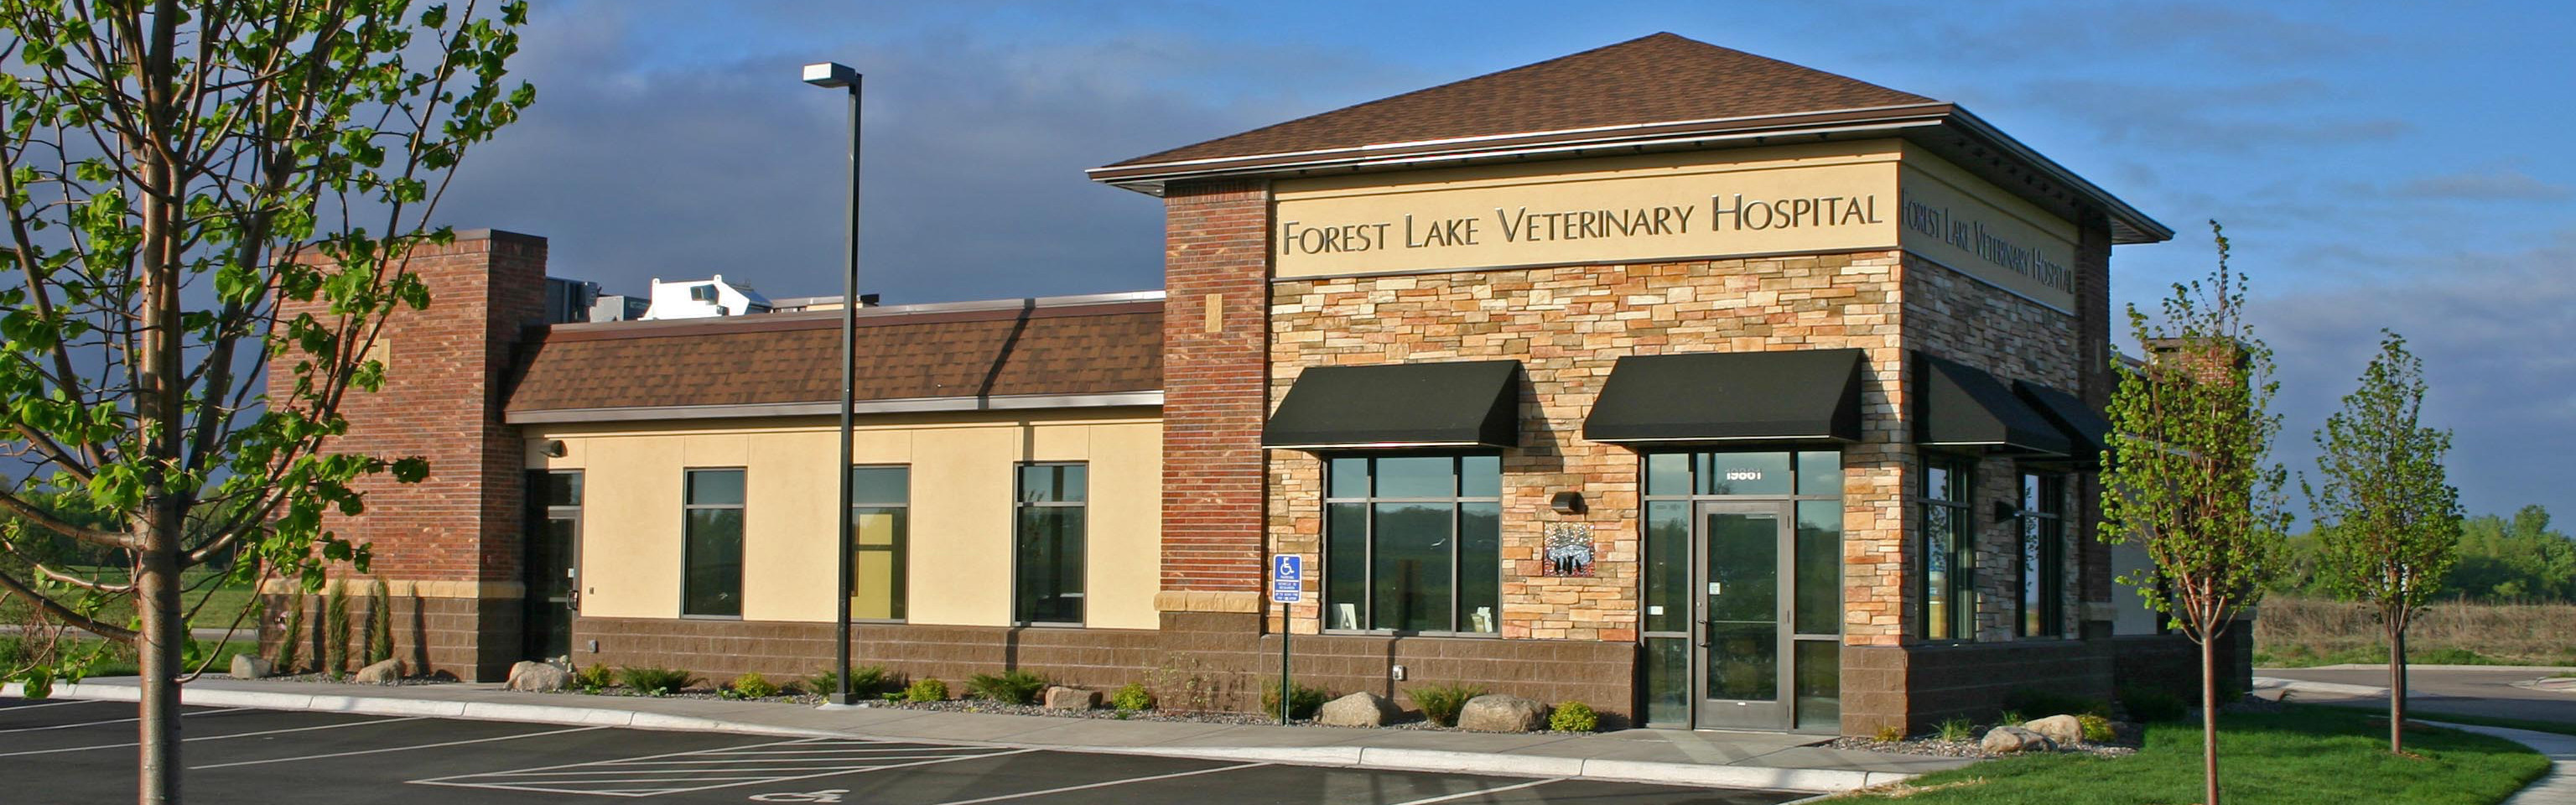 Forest Lake Veterinary Hospital | Forest Lake Veterinary Hospital